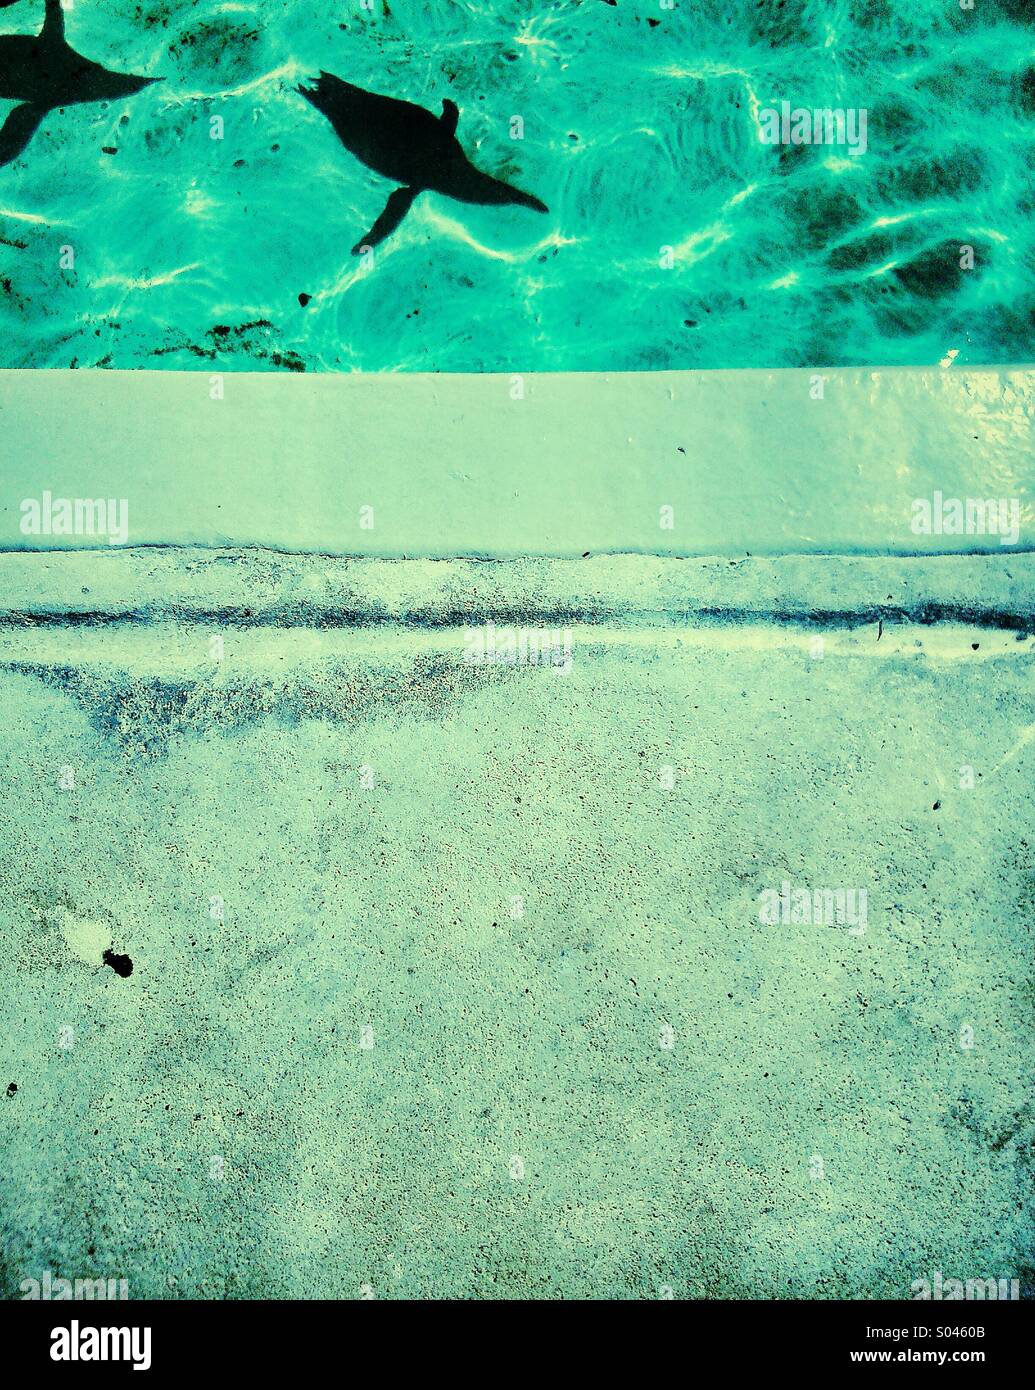 Le ombre dei due pinguini di nuoto in piscina Foto Stock